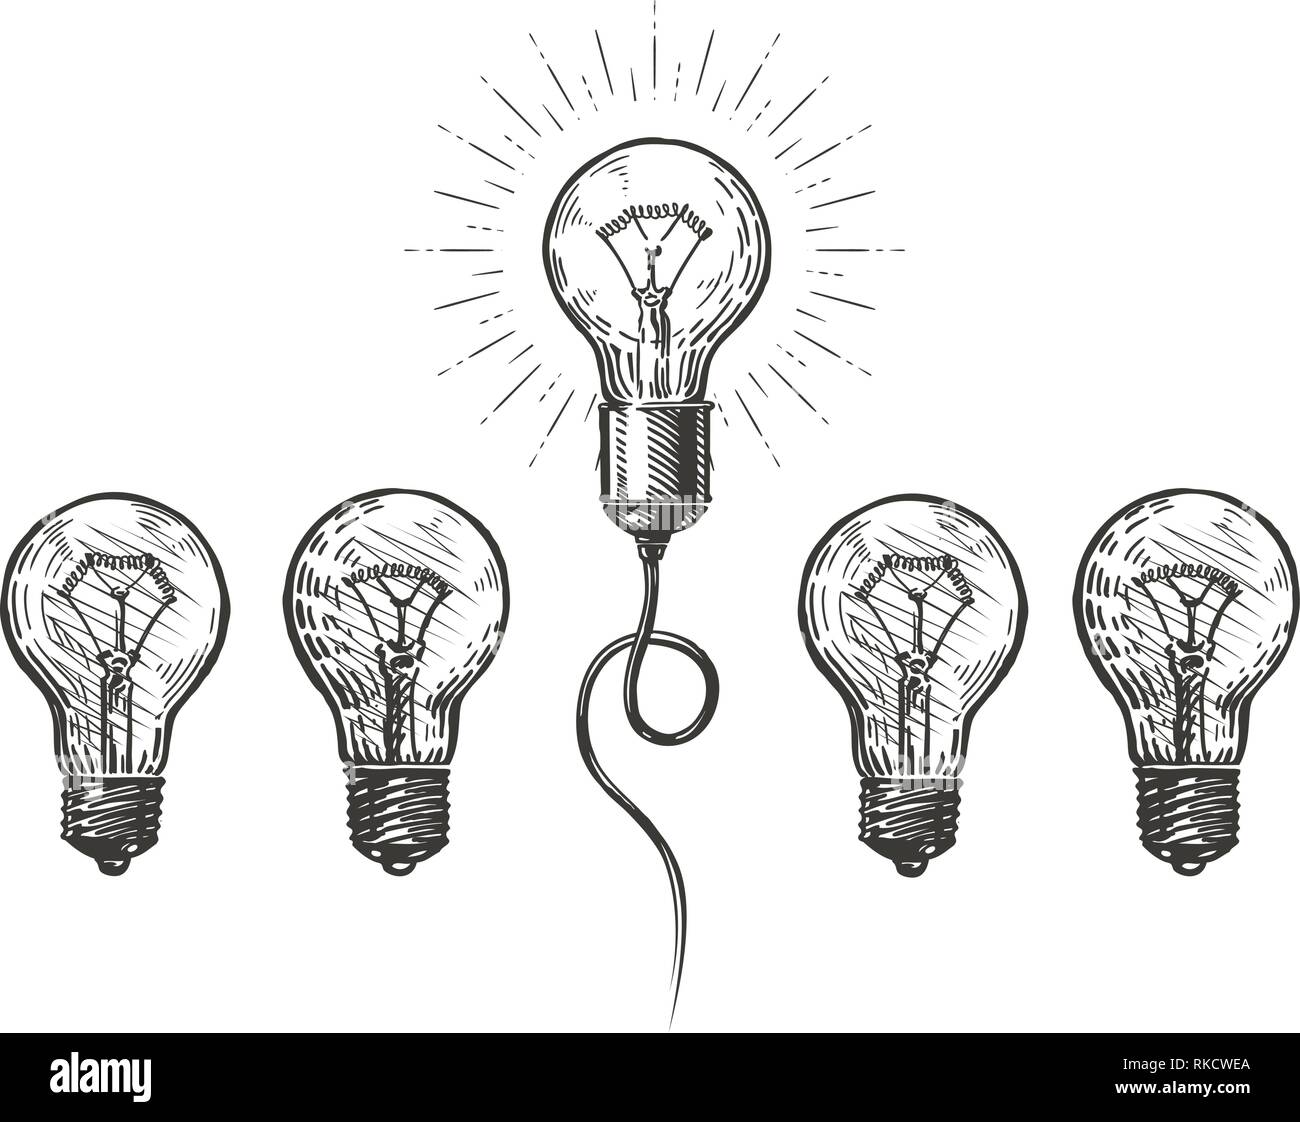 Idee, Innovation. Hand Business Konzept erarbeitet. Skizze Vector Illustration Stock Vektor